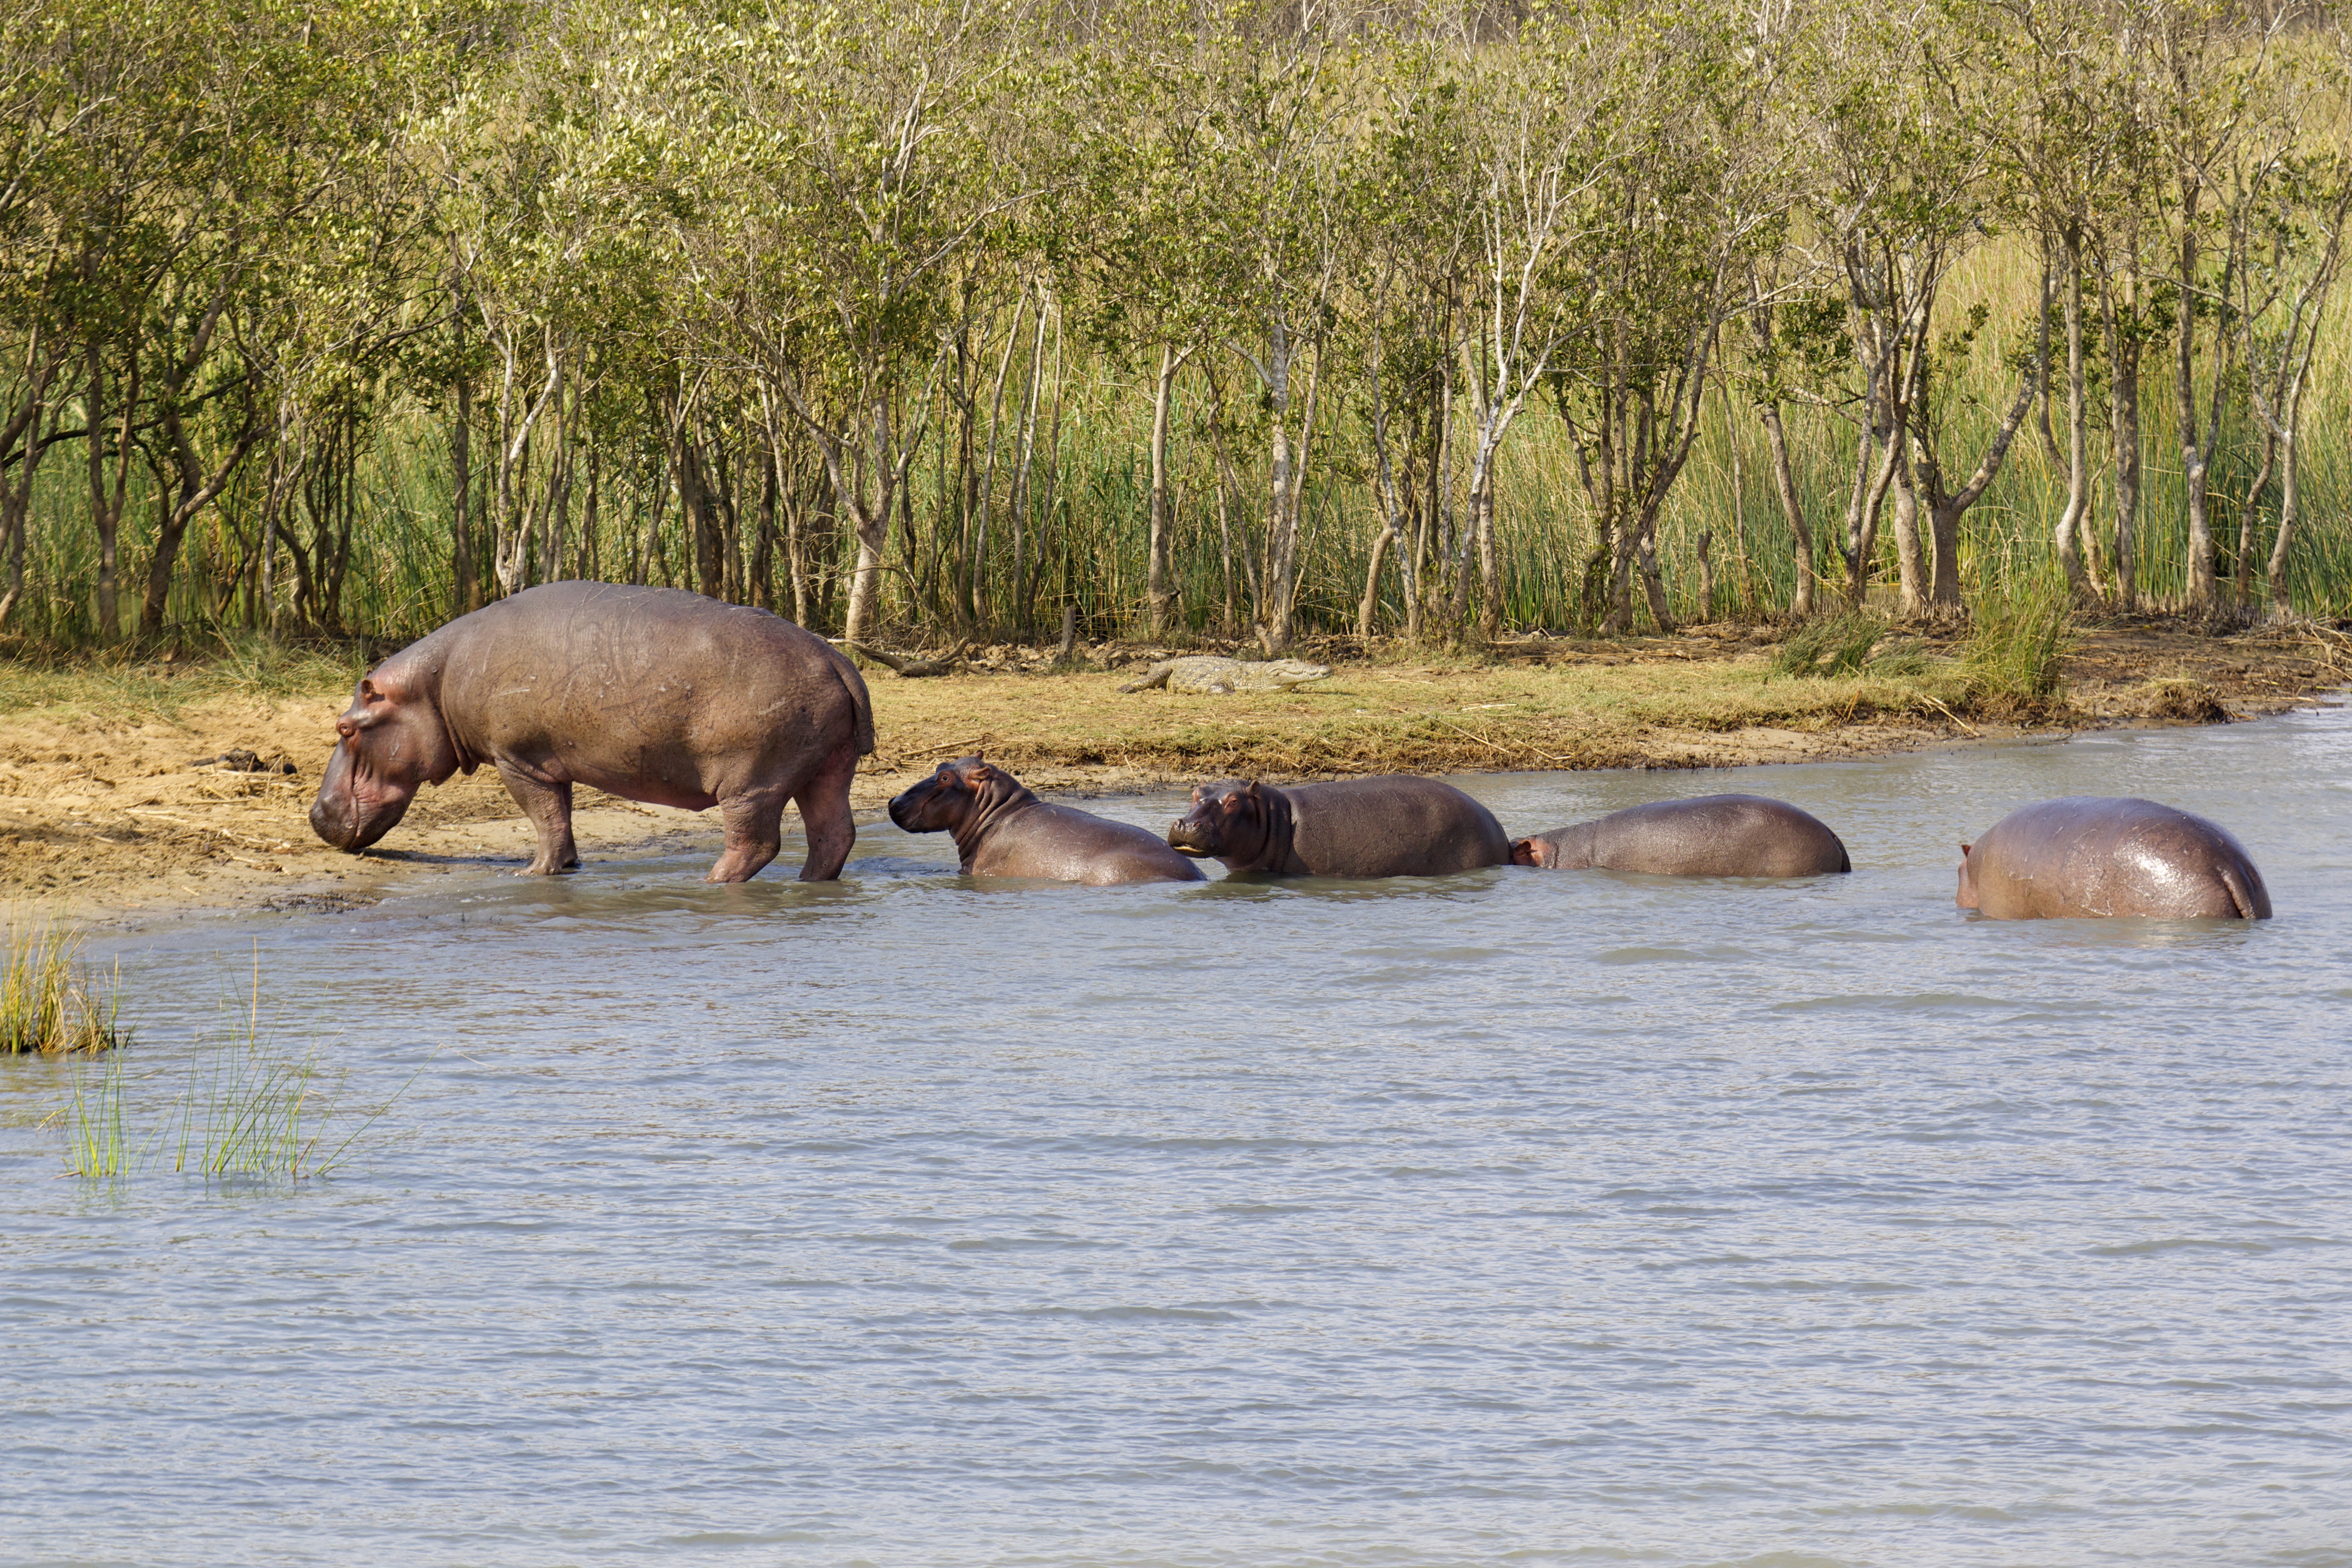 The hippo Family